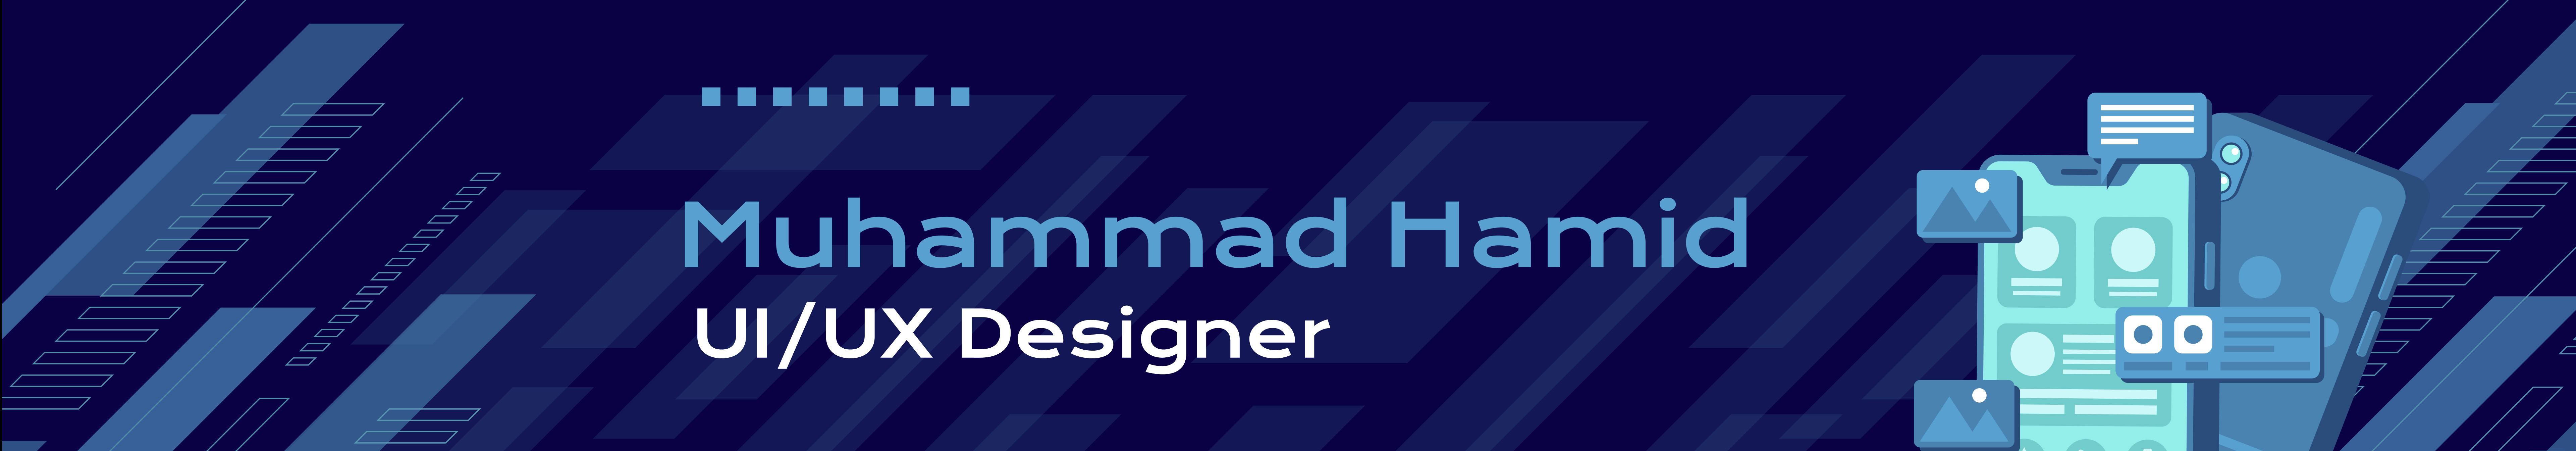 Muhammad Hamid のプロファイルバナー